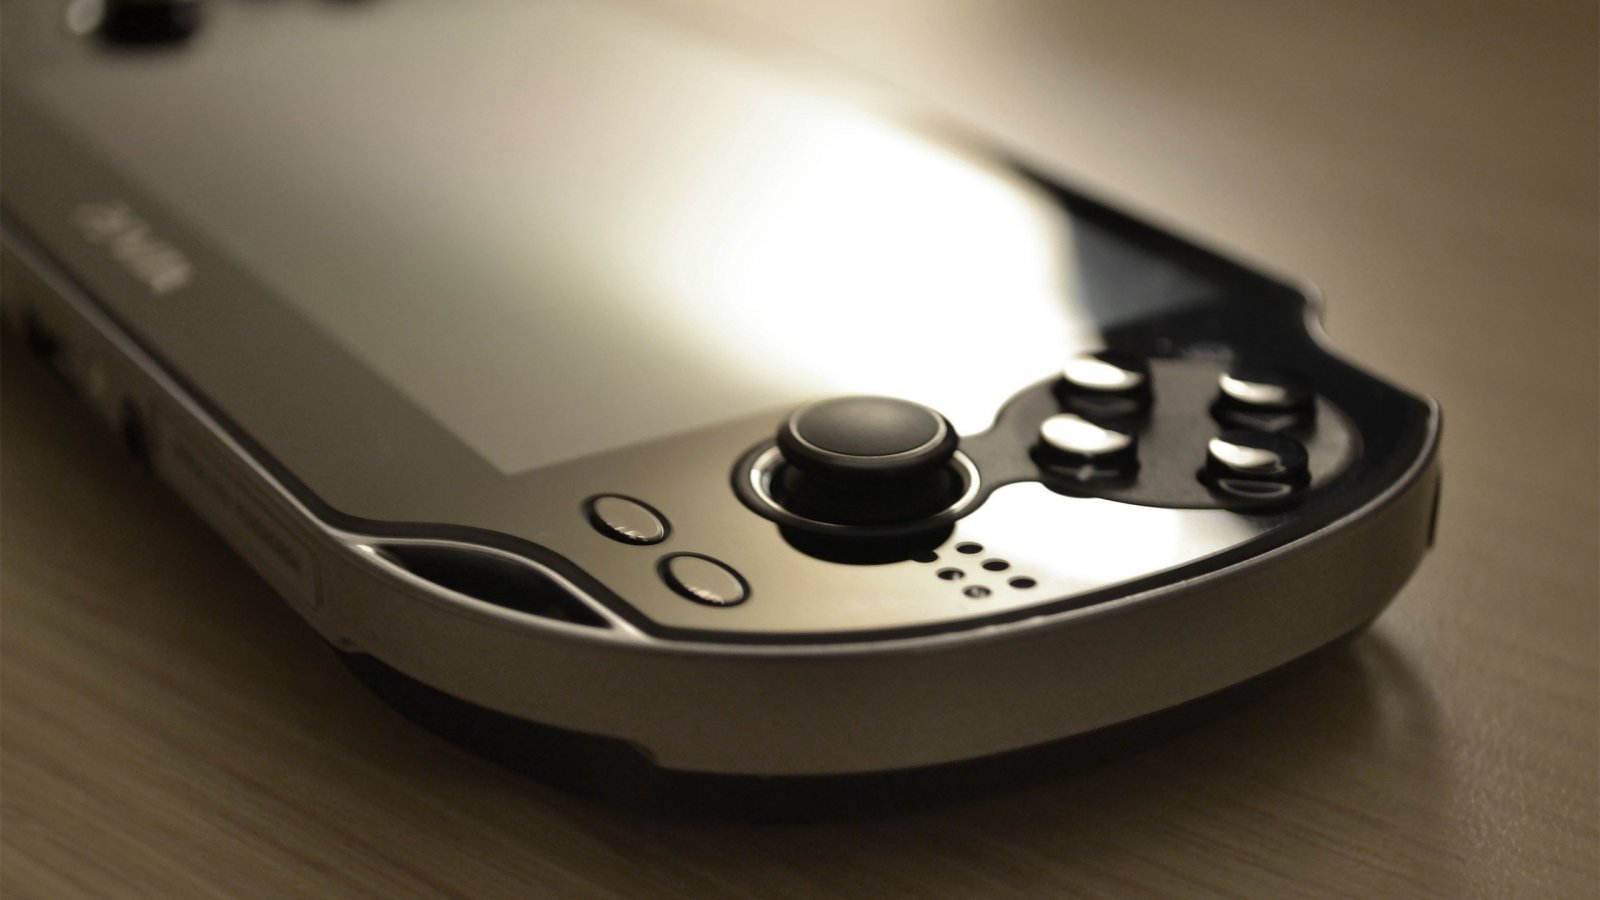 Sony lavora a un nuovo hardware per Henderson, si pensa a una PlayStation portatile